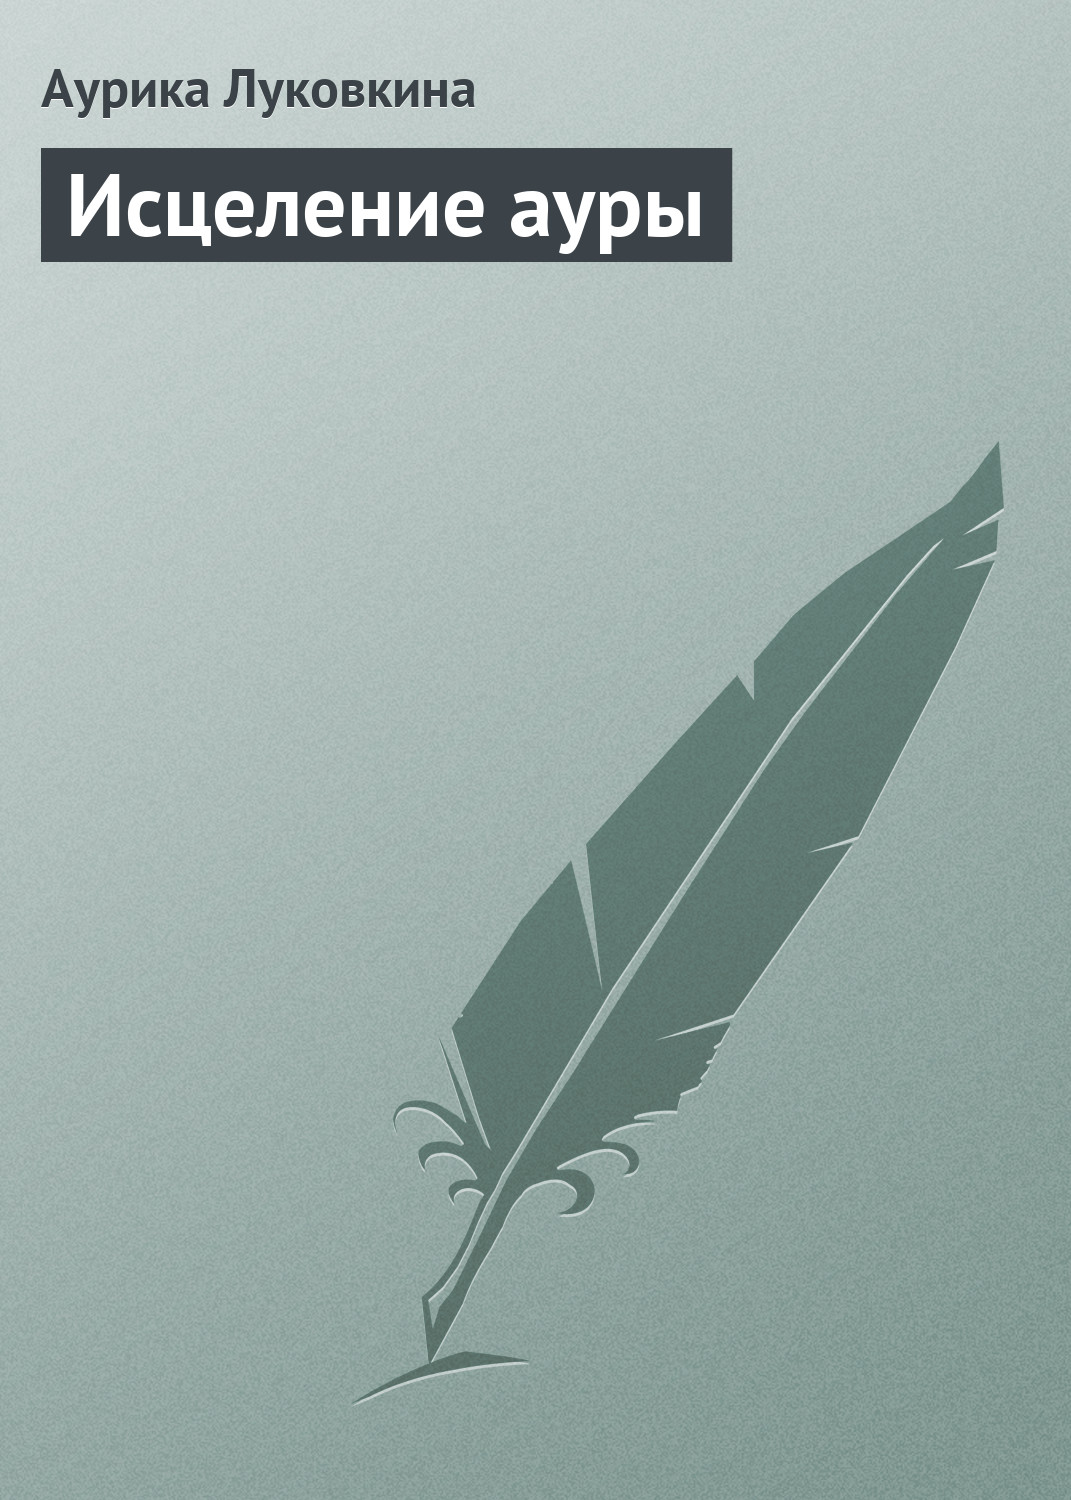 Книга Исцеление ауры из серии , созданная Аурика Луковкина, может относится к жанру Эзотерика. Стоимость электронной книги Исцеление ауры с идентификатором 8970247 составляет 54.99 руб.